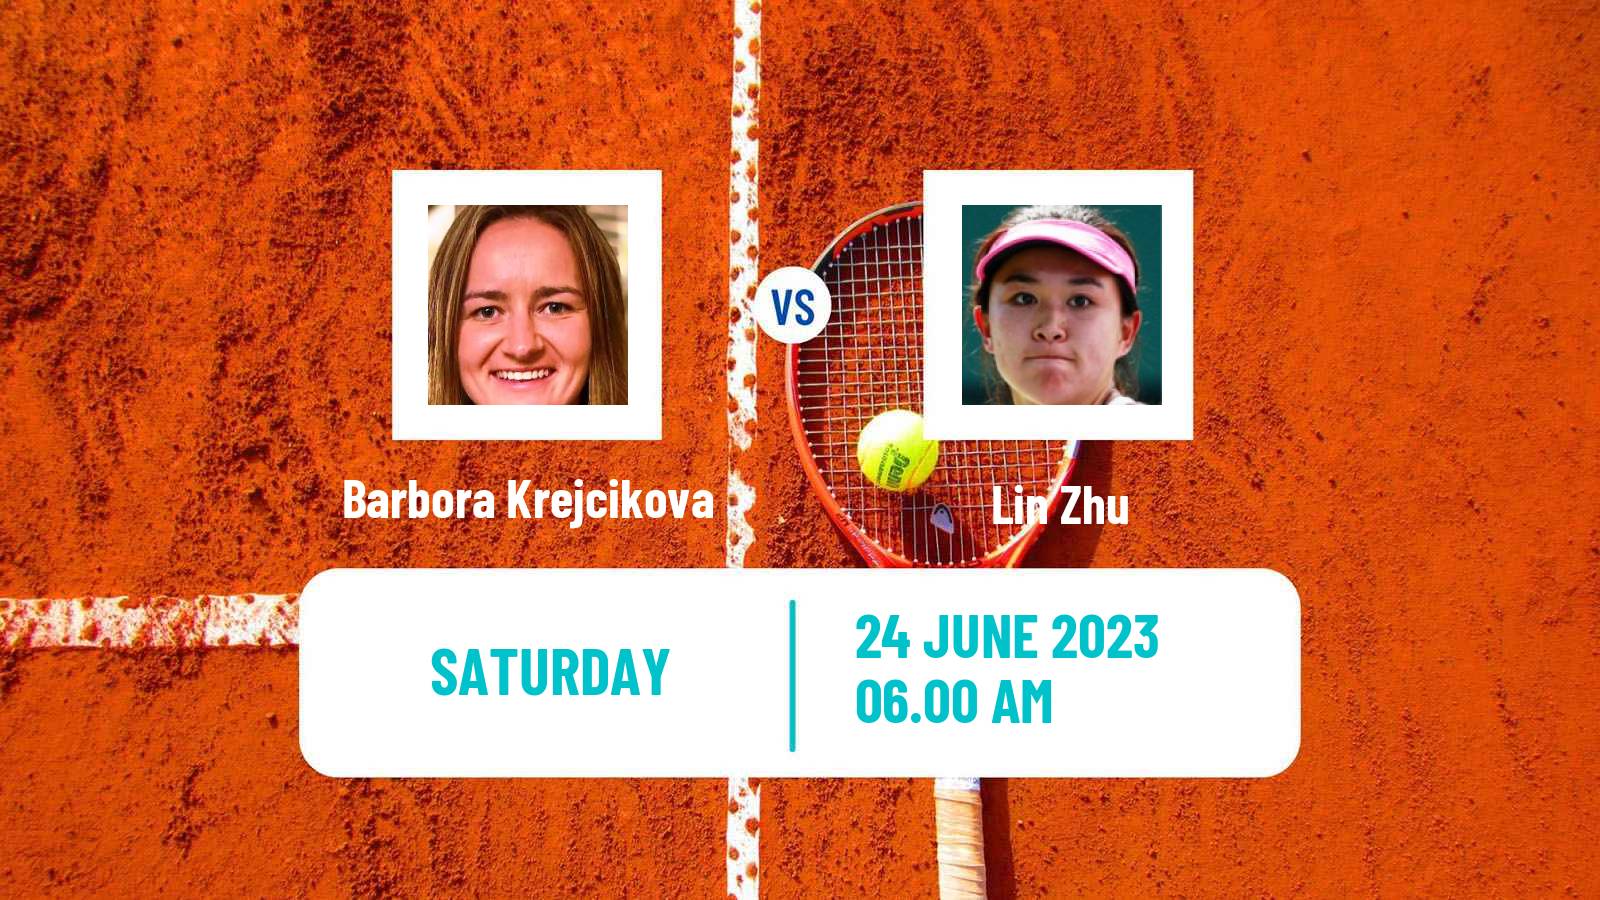 Tennis WTA Birmingham Barbora Krejcikova - Lin Zhu